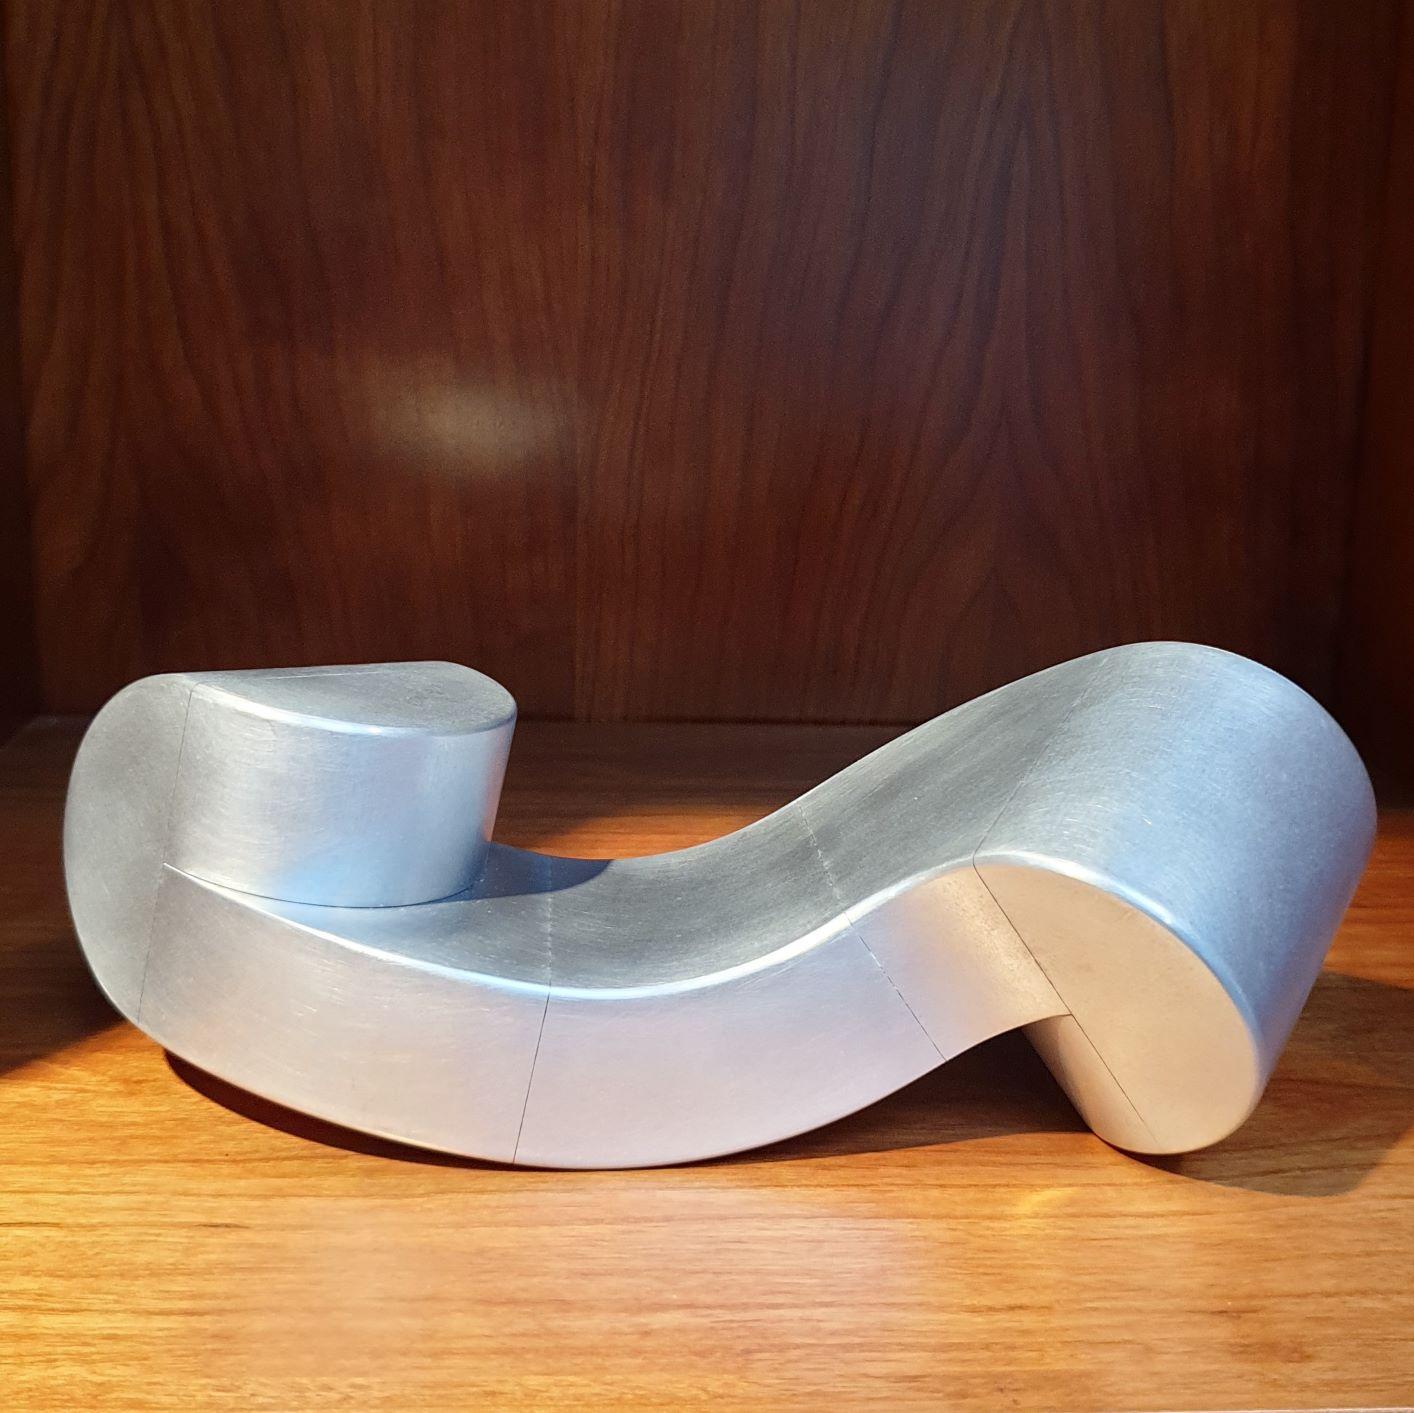 Henk van Putten Abstract Sculpture - Bench - aluminum contemporary modern abstract geometric sculpture